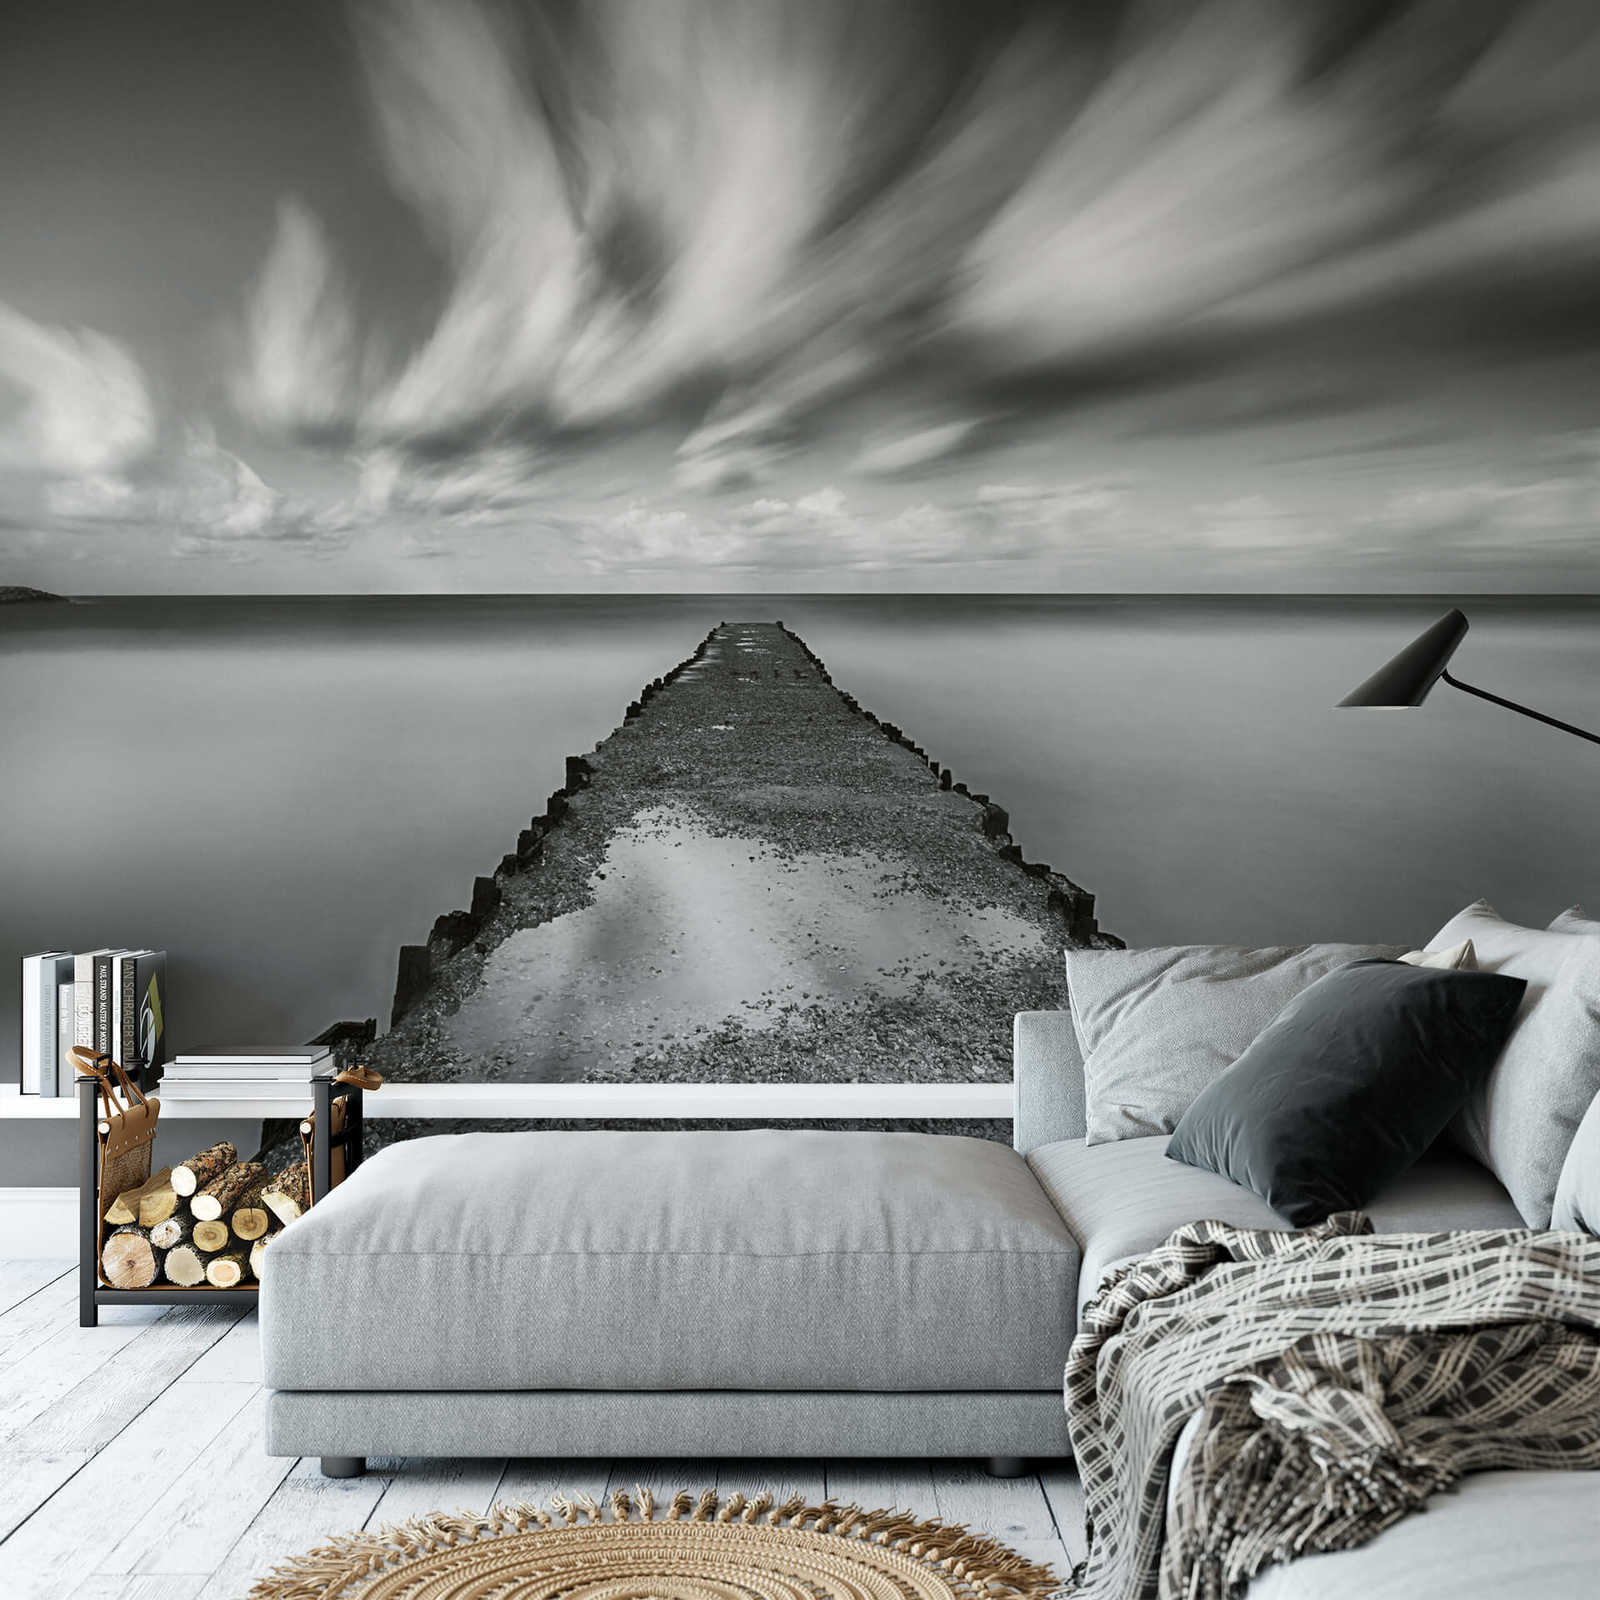             Fototapete Meer mit Bootssteg – Schwarz, Weiß, Grau
        